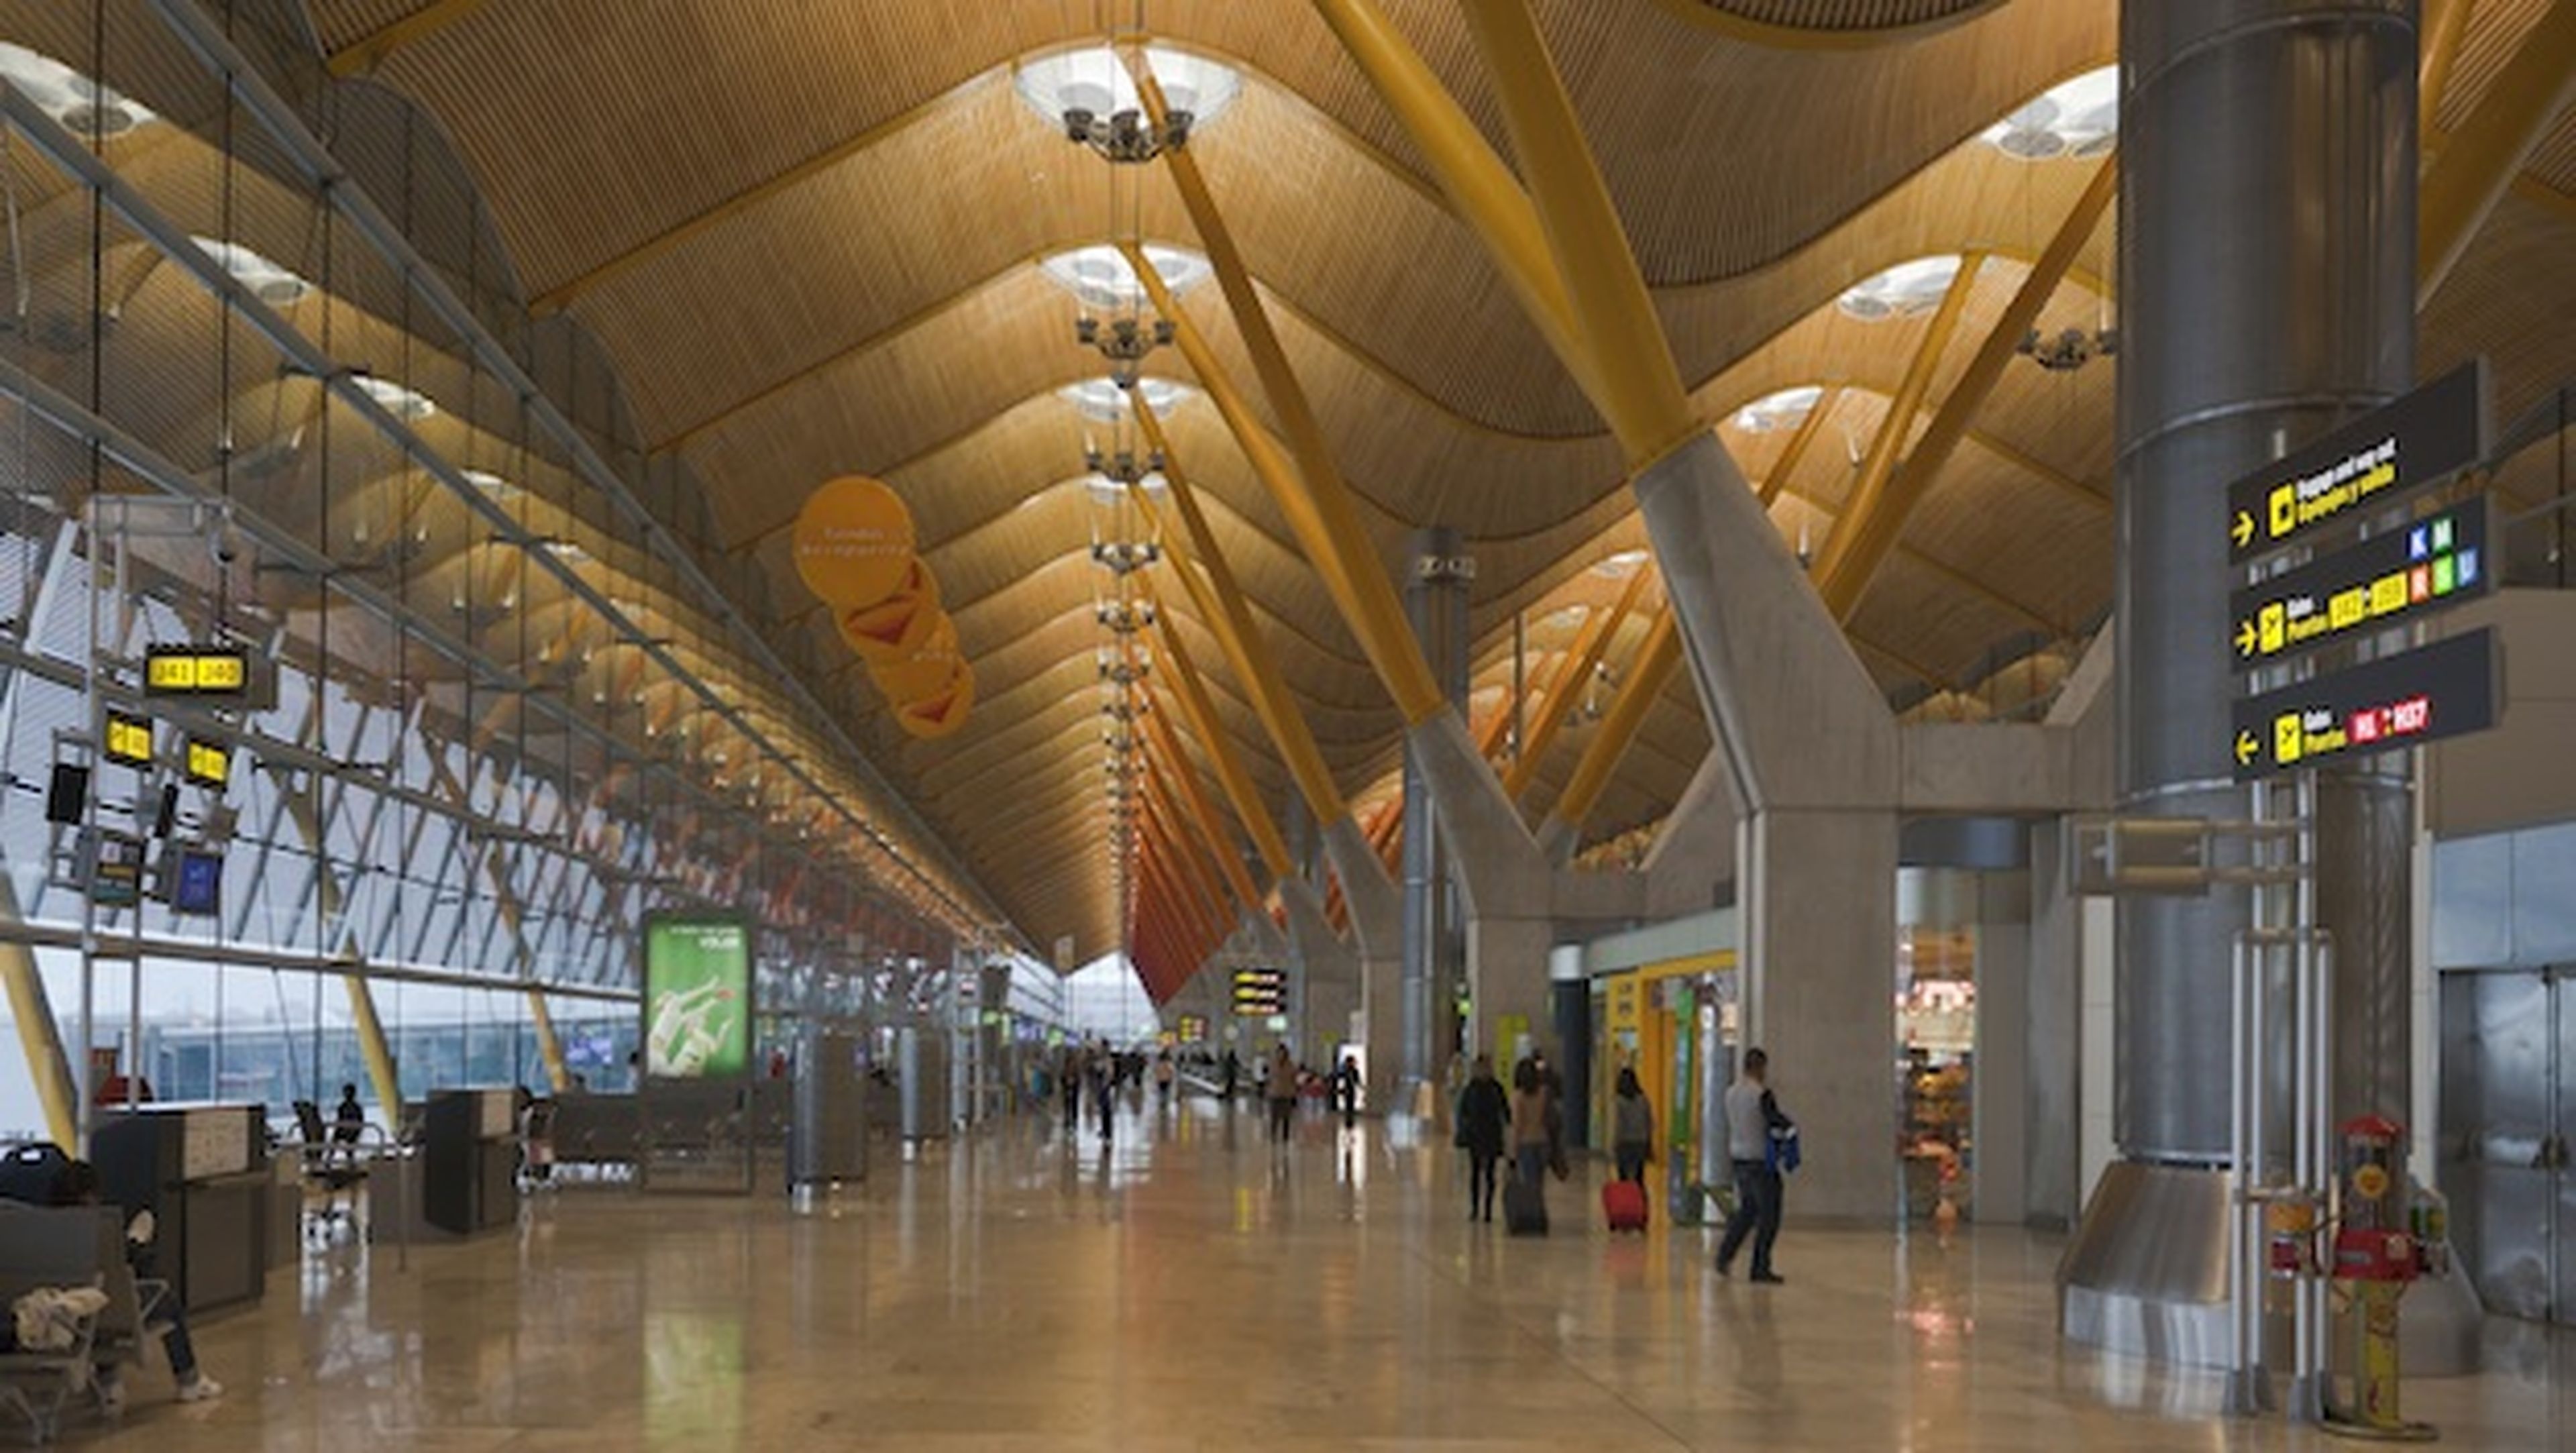 El aeropuerto del futuro será mucho más cómodo, eficaz y rápido